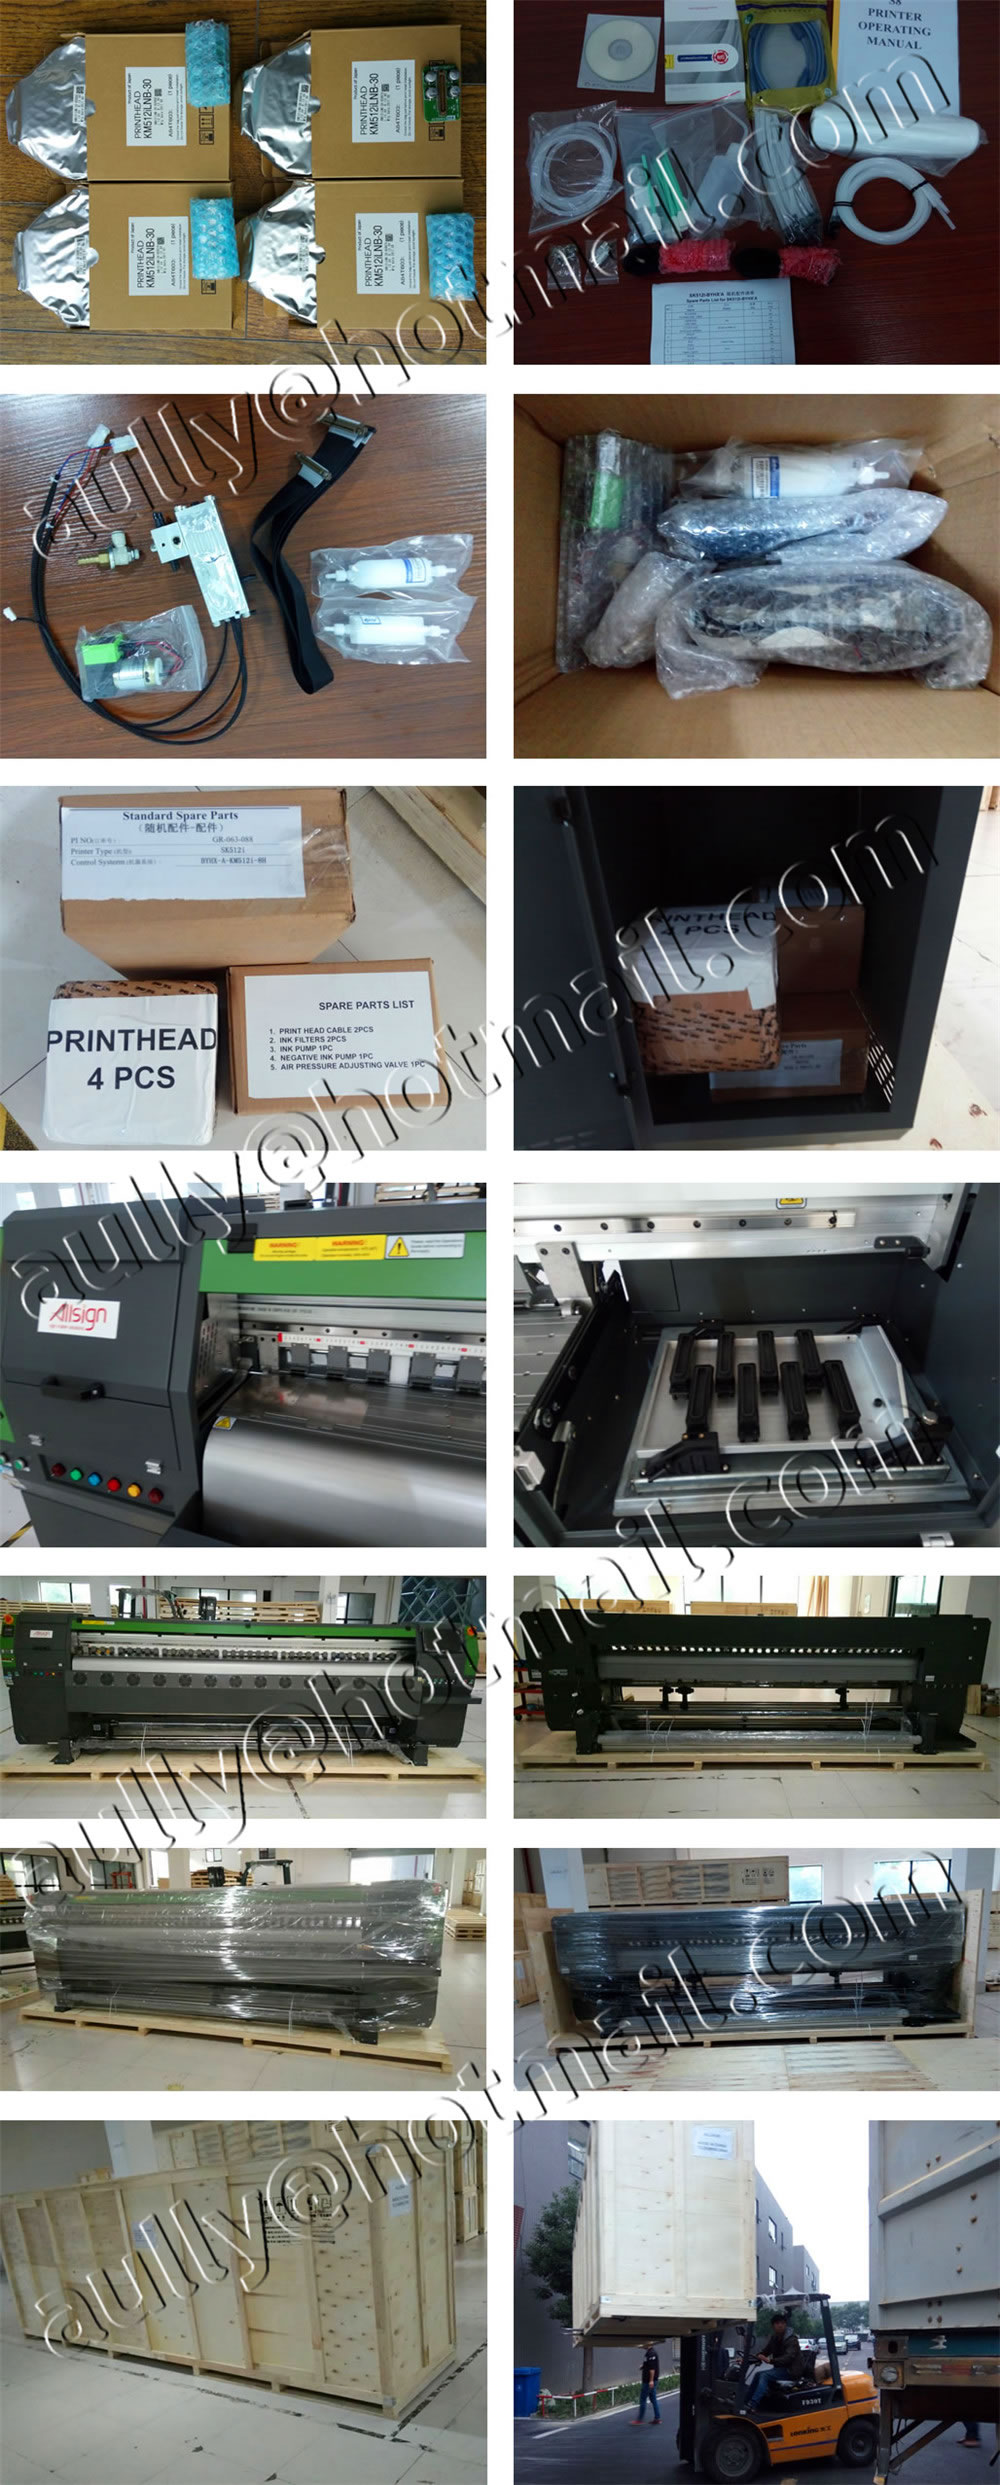 AS170919DM (Konica 512i Printer SK512i with 4pcs Konica 512i/30pl printheads & Printer Parts) to Republica Dominicana